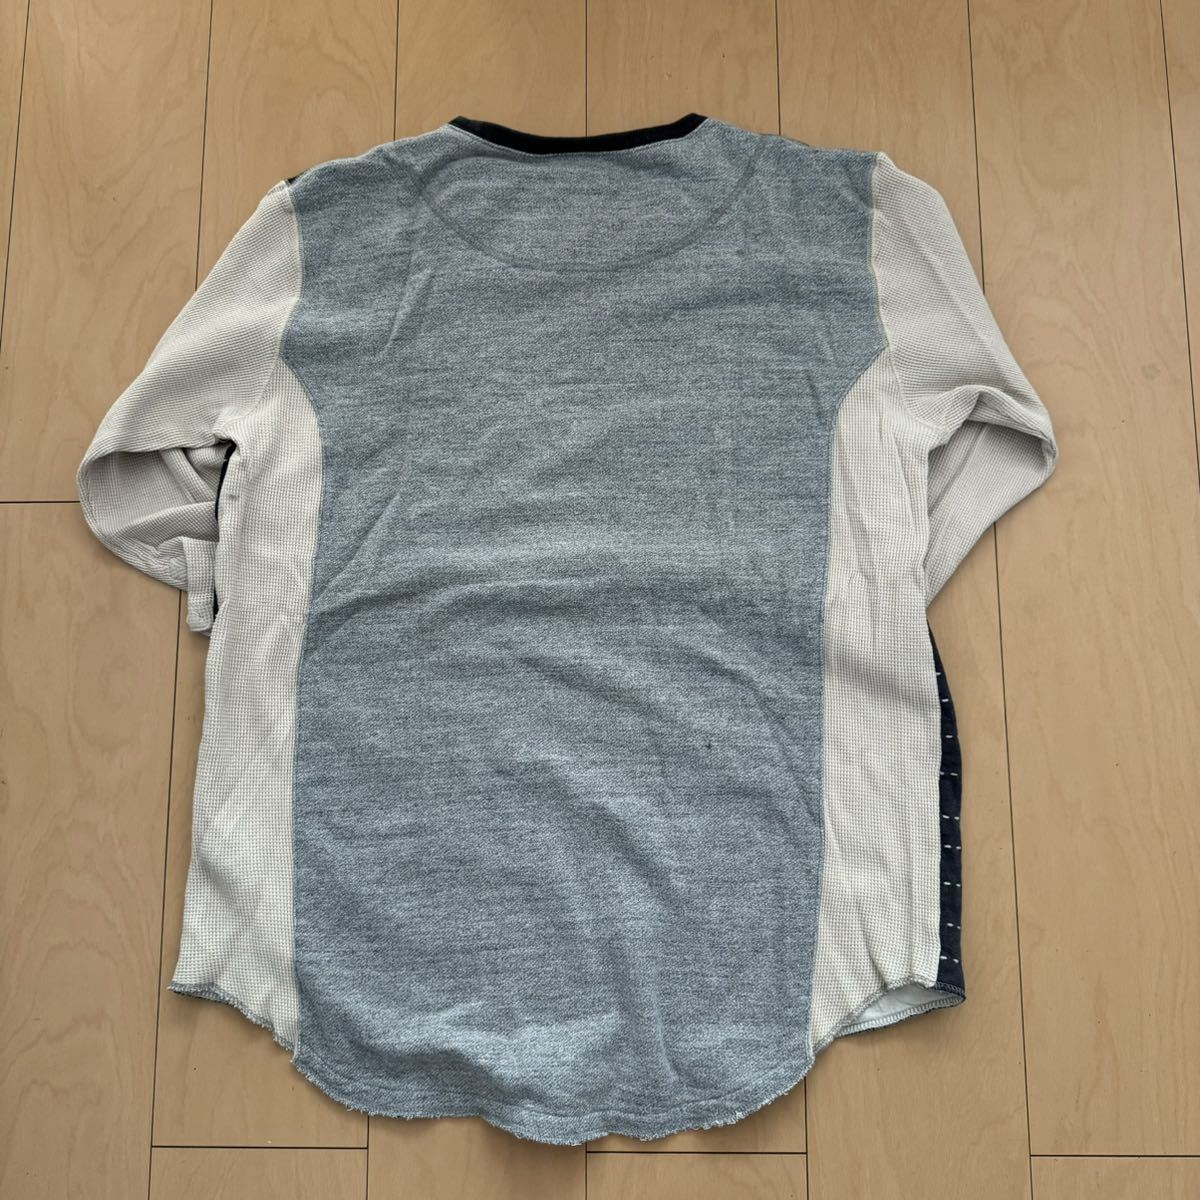 激レア! SASQUATCH fabrix パッチワーク5部袖Tシャツ サイズXL 日本製 美品格安!_画像2